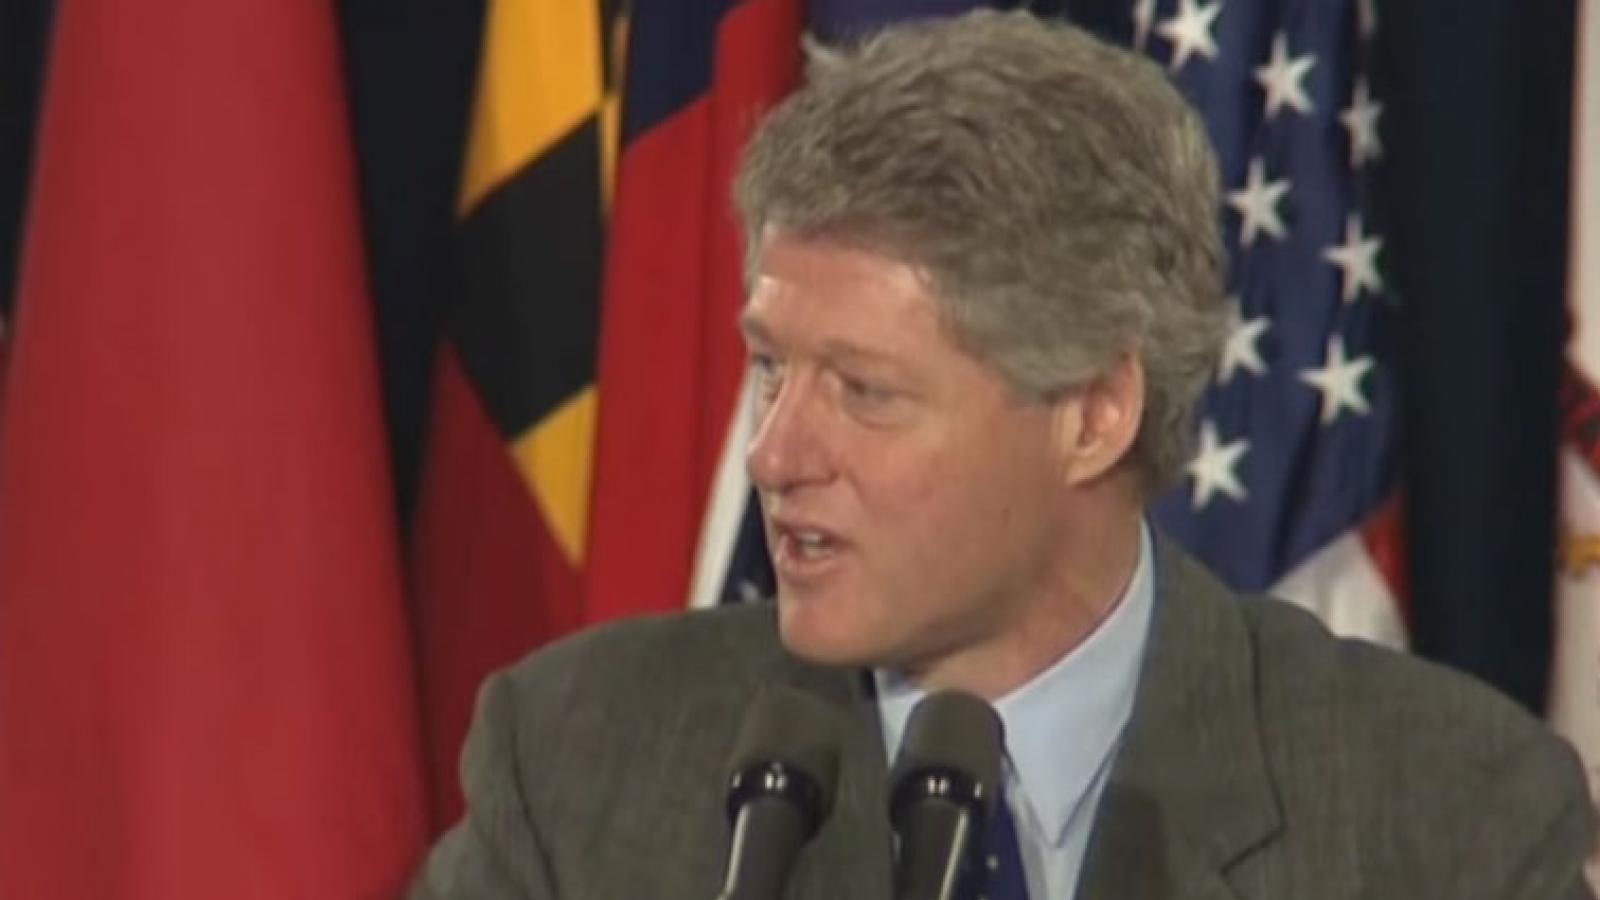 President Clinton speaking